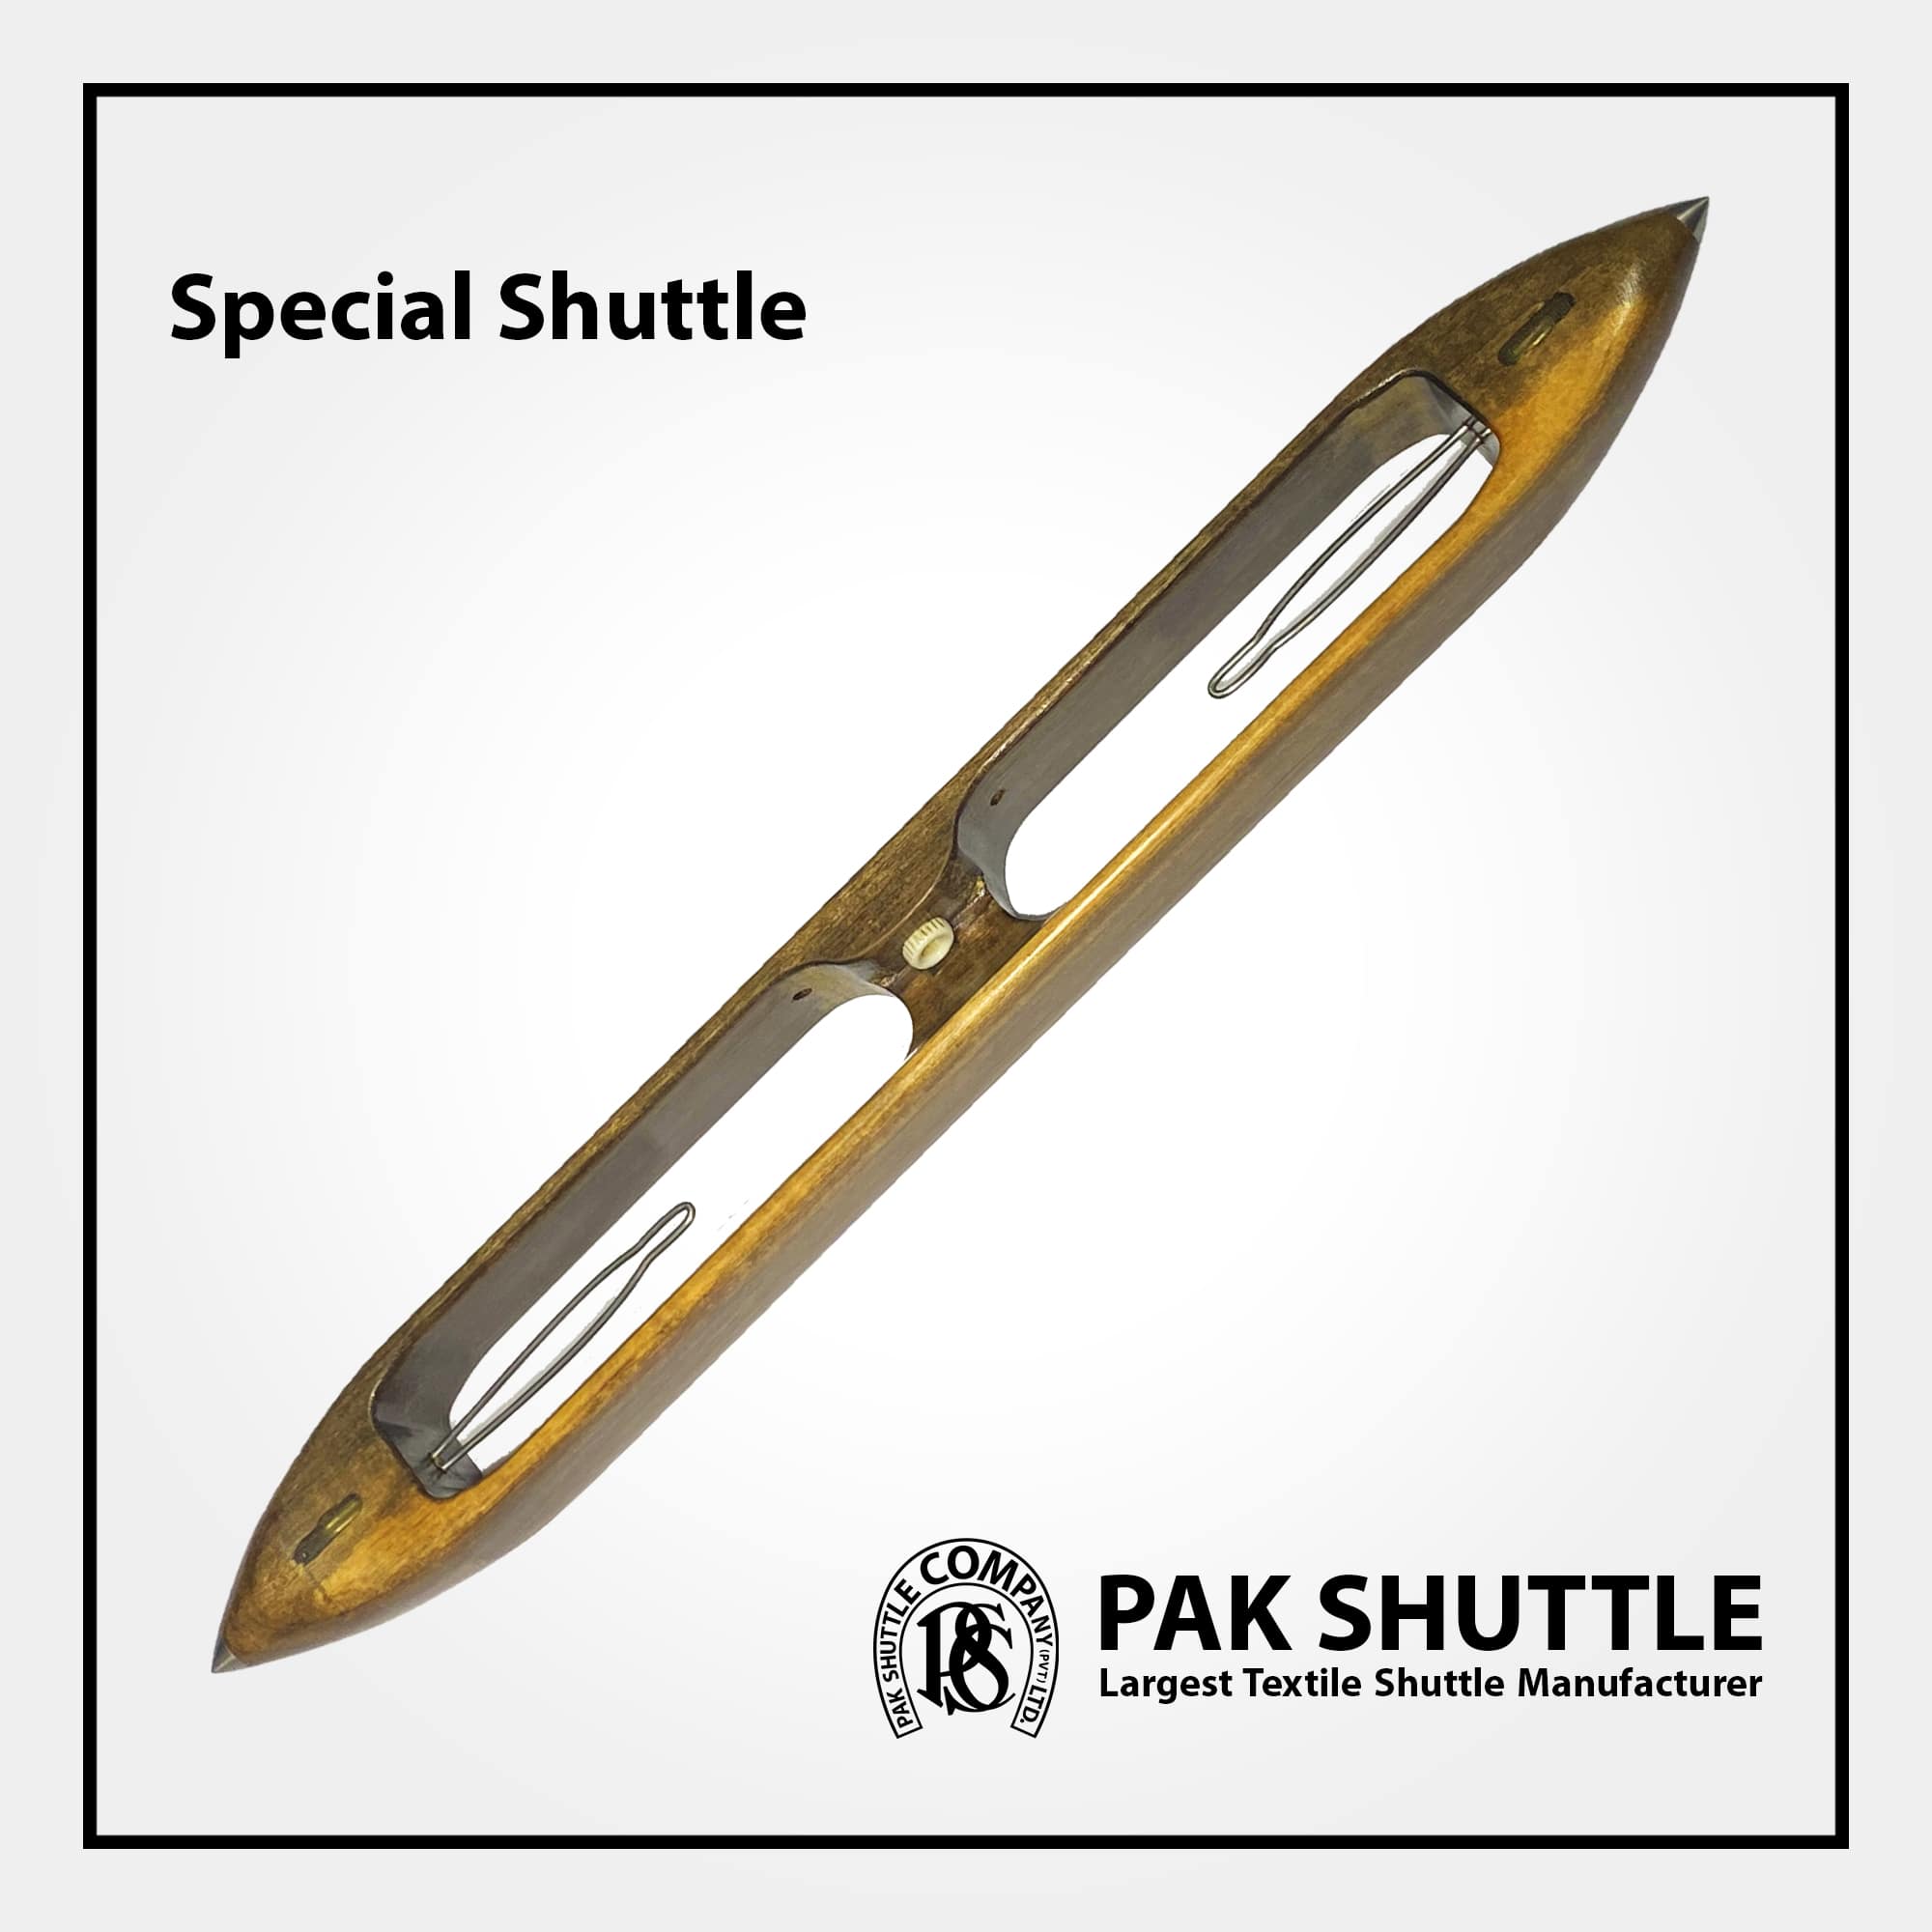 Special Shuttle by Pak Shuttle Company Pvt Ltd.